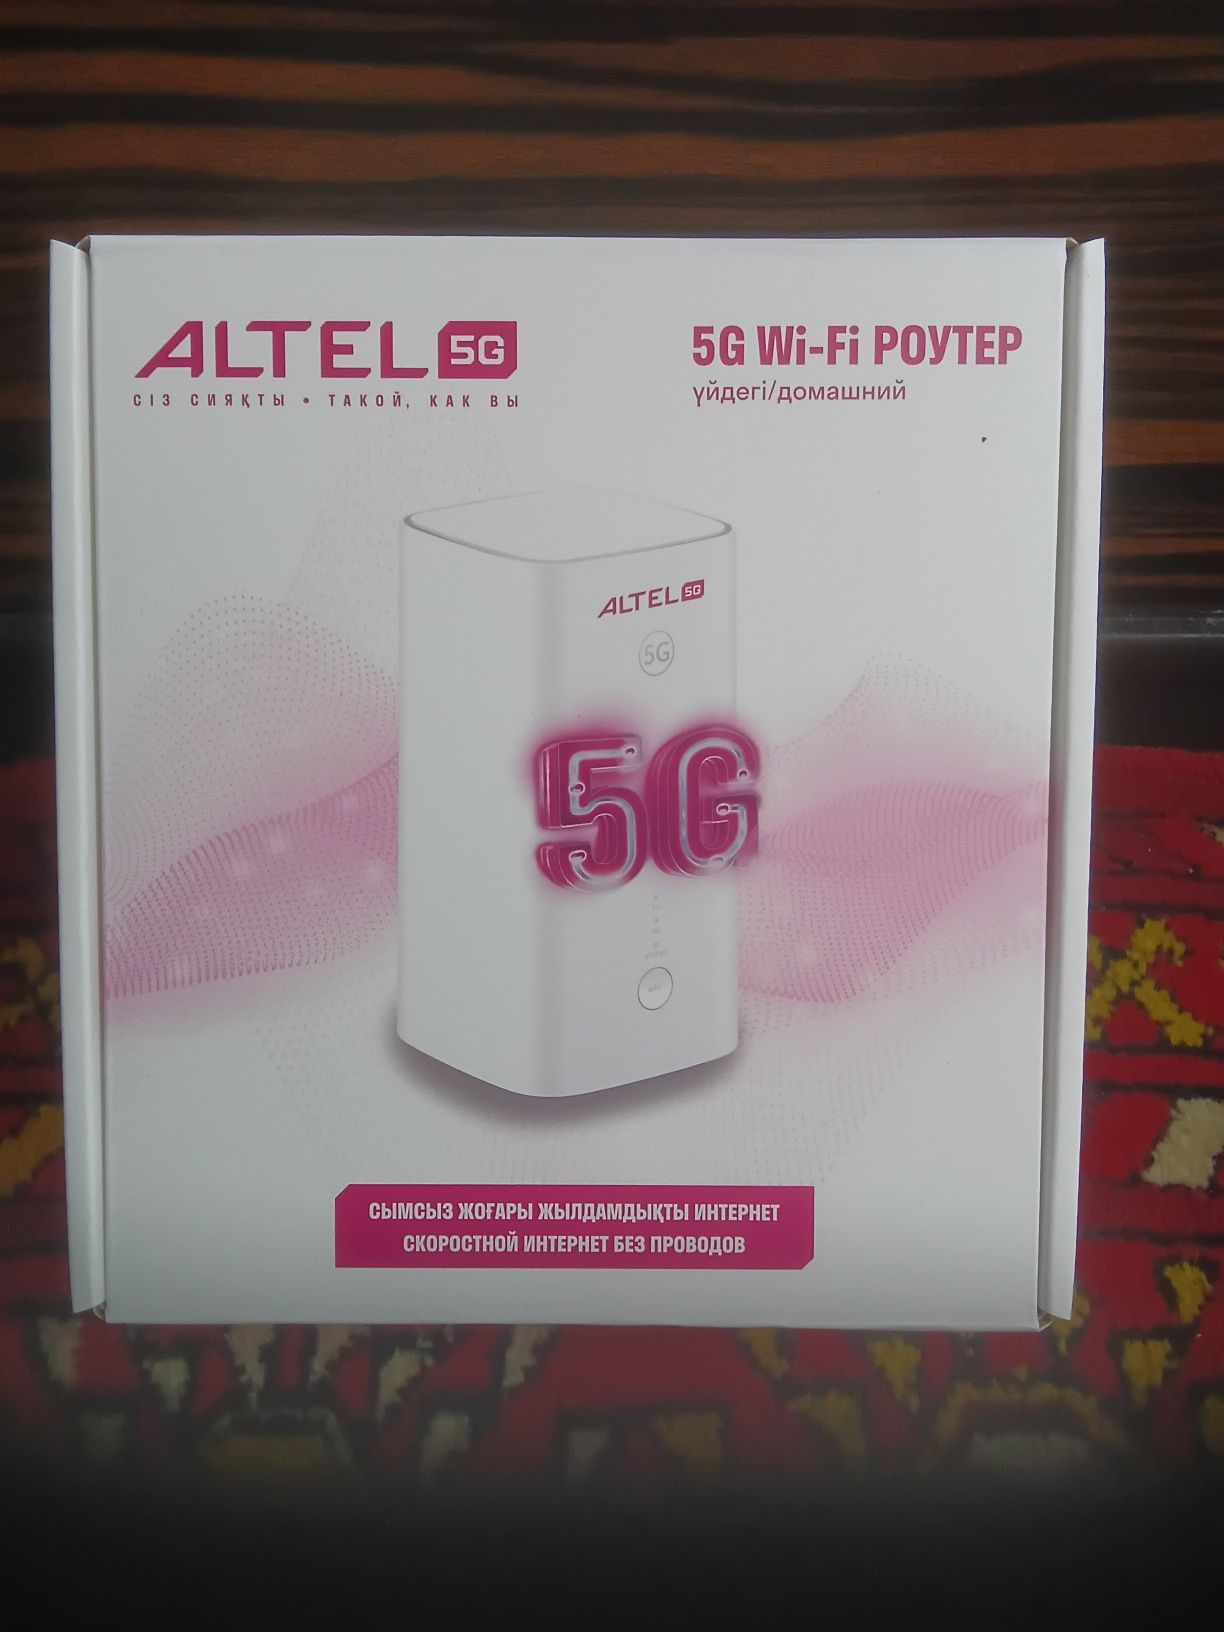 5G абсолютно новый!  в 4G с агрегацией сат19 роутер билайн актив алтел